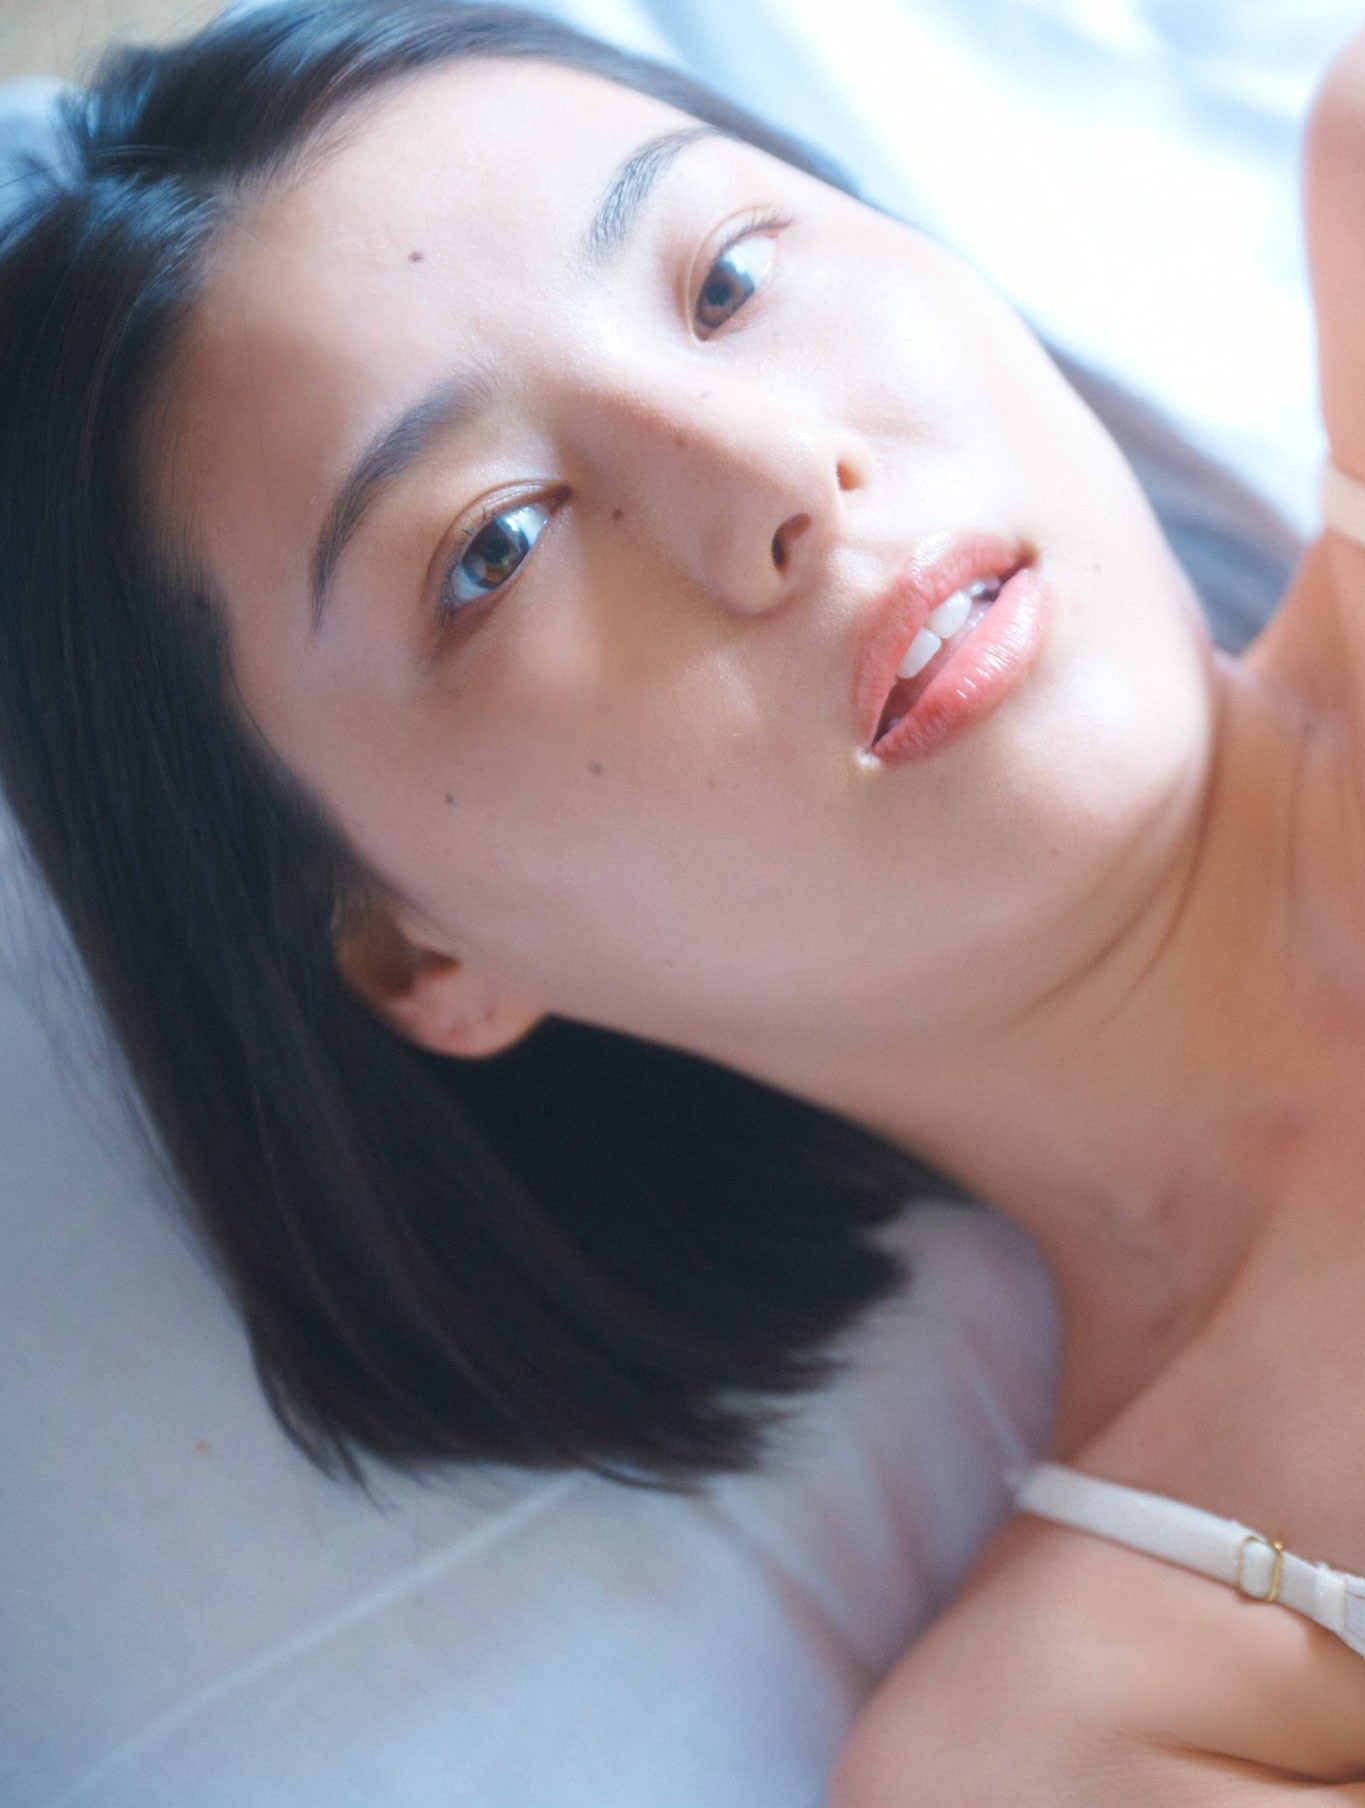 Iori Sagara 相楽伊織, SPA!デジタル写真集 「魅惑の曲線美」 Set.02